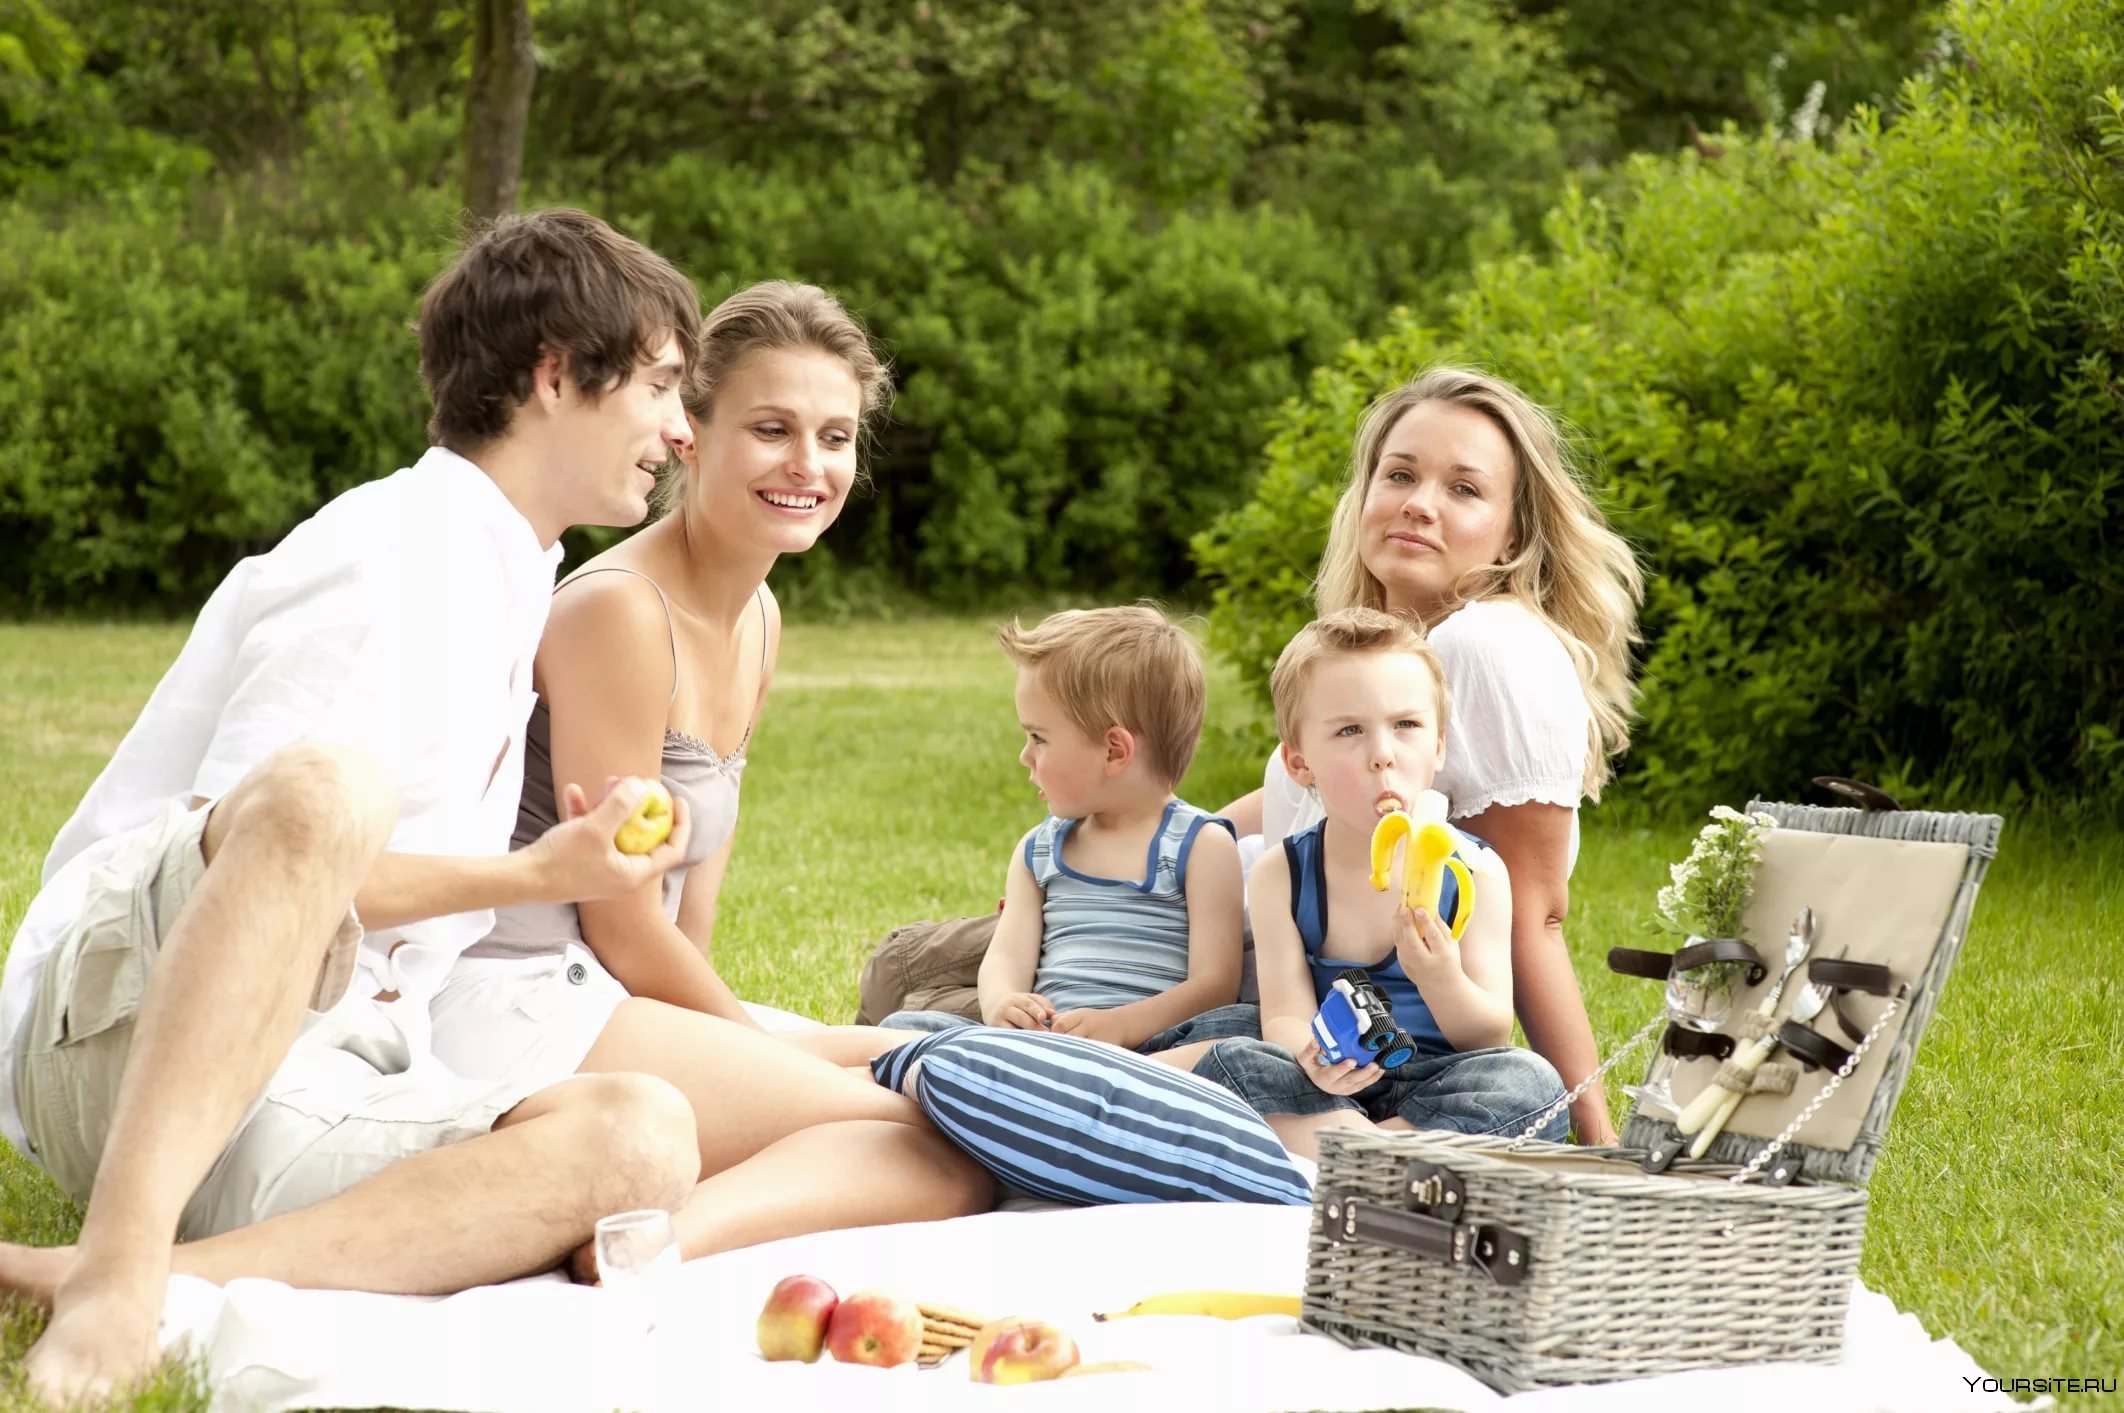 Распорядиться семейный. Семья на пикнике. Пикник с семьей на природе. Времяпровождение с семьей. Люди отдыхают на природе.